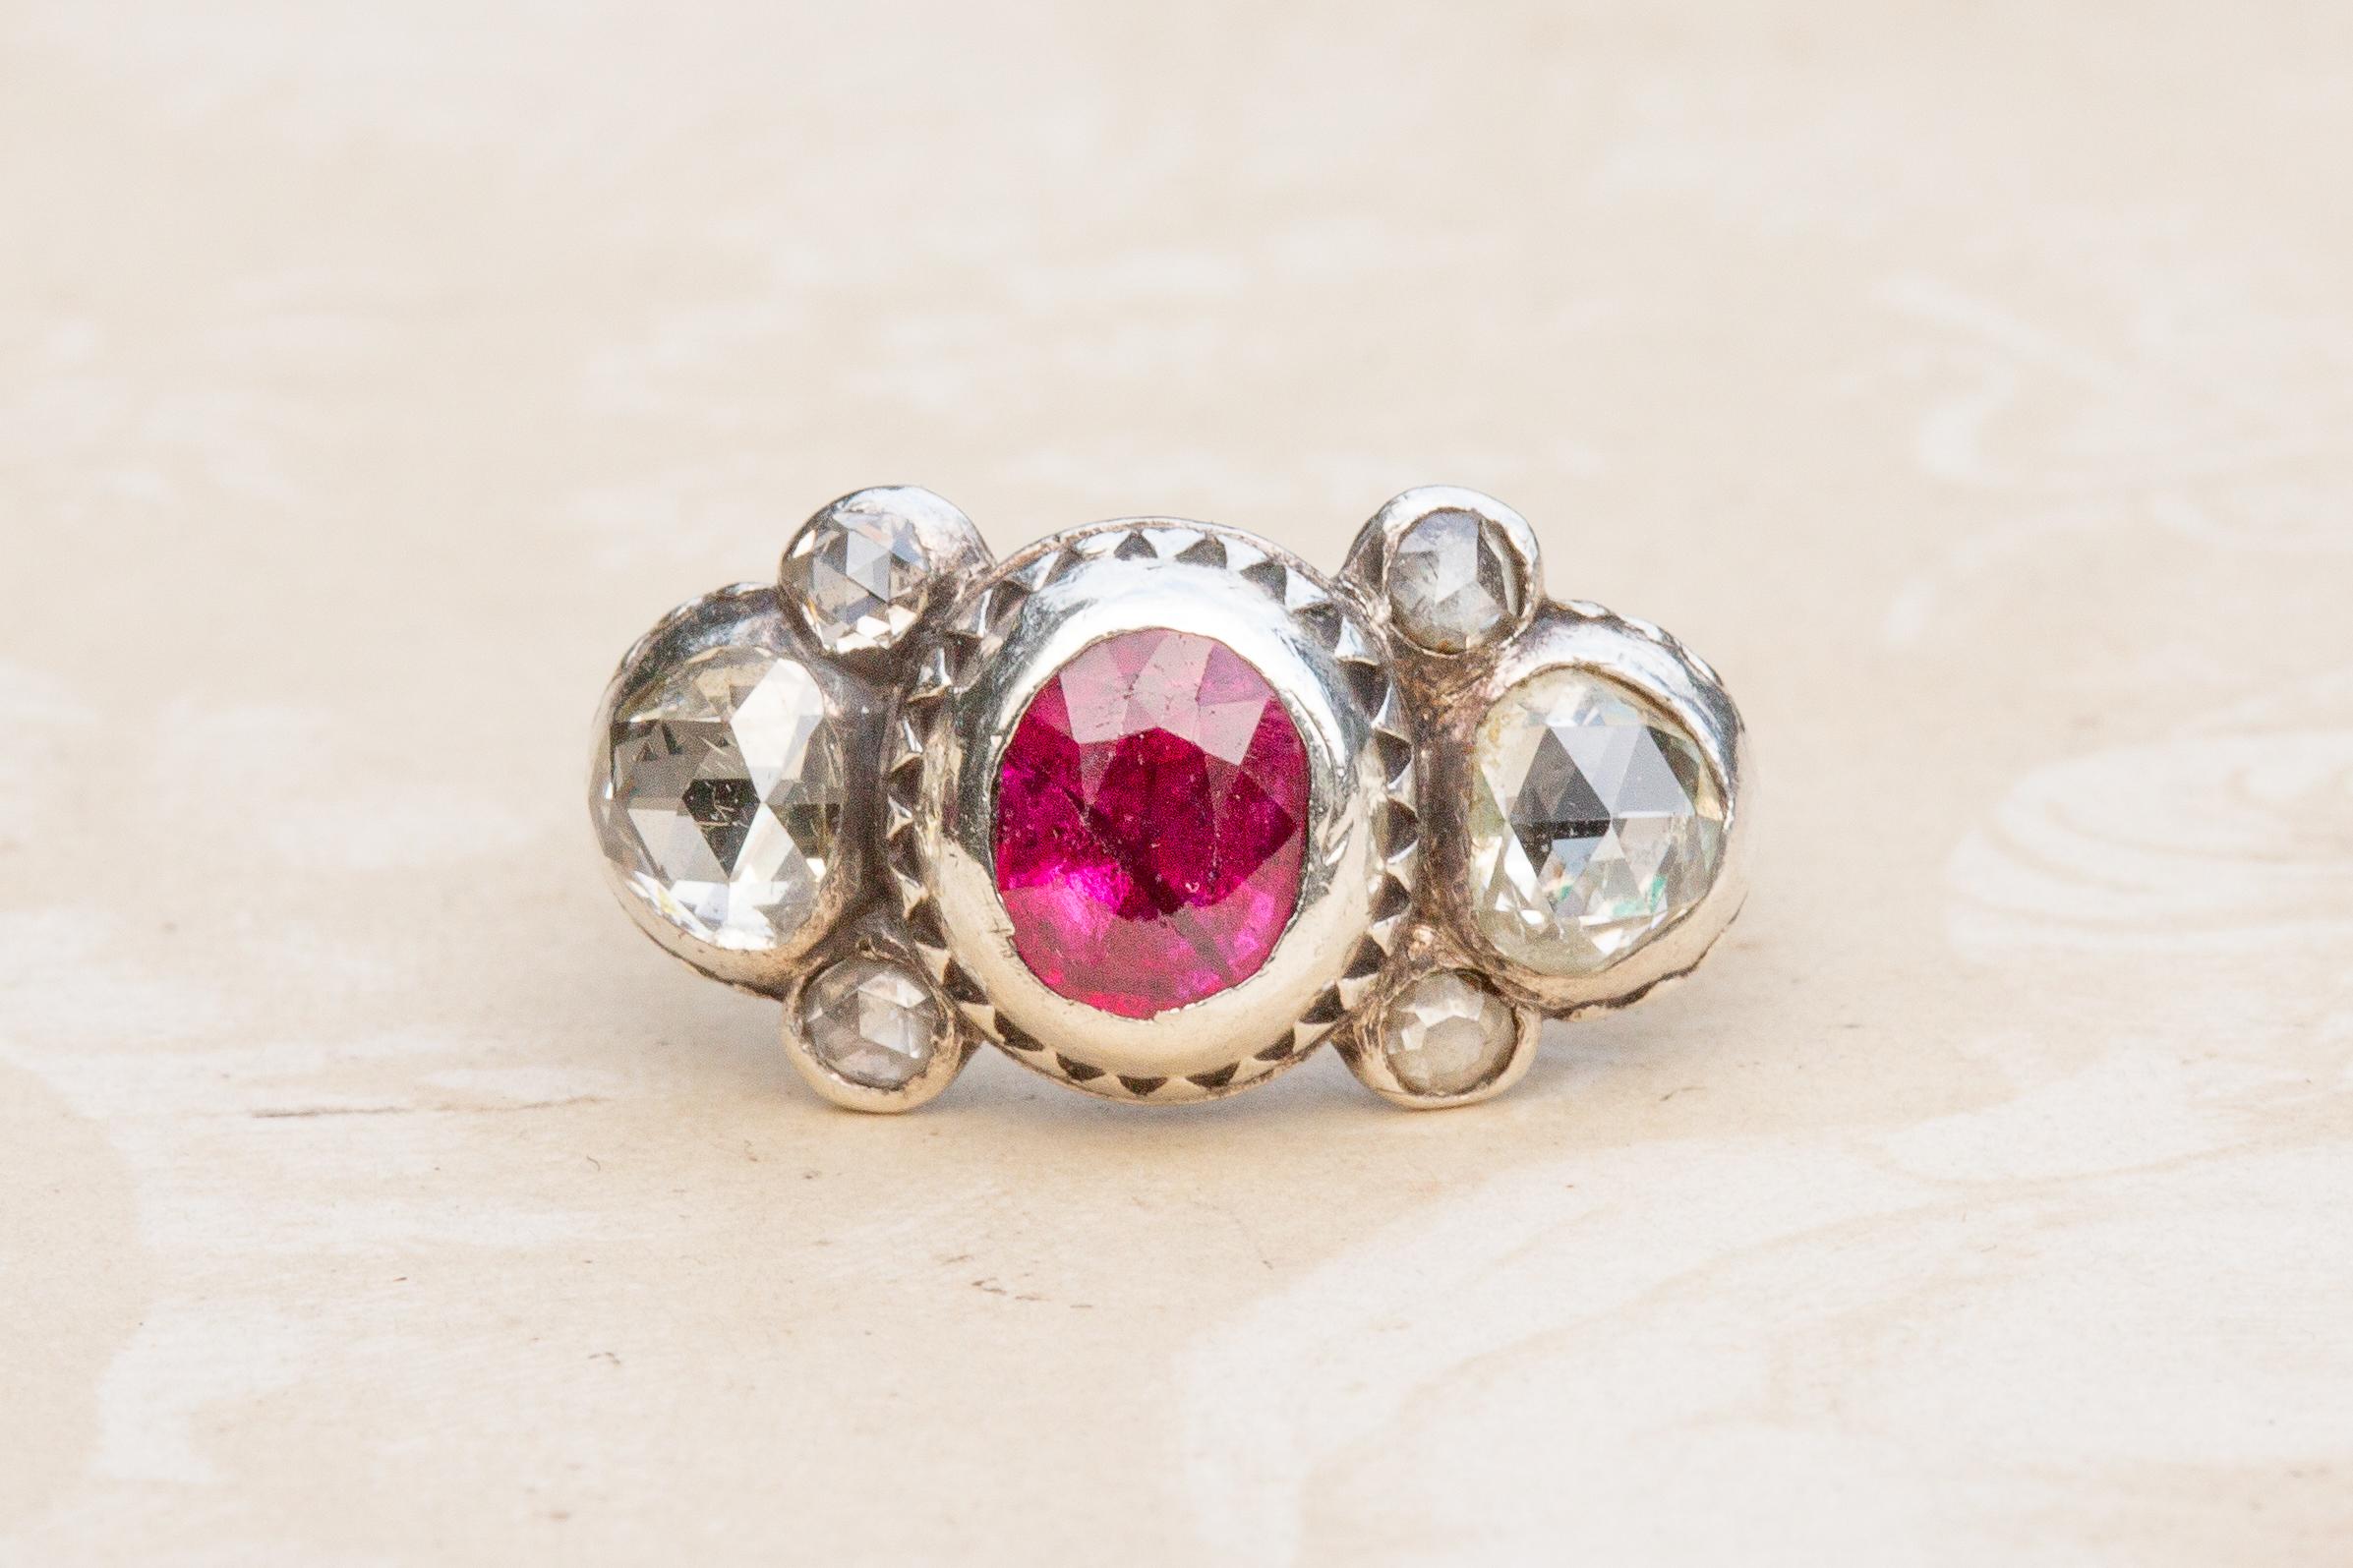 Un bel exemple d'une rare bague à sept pierres en rubis et diamants taillés en rose datant du début du XVIIIe siècle, vers 1700. La bague a été fabriquée en Europe occidentale (probablement en Allemagne) et incarne véritablement la beauté et la